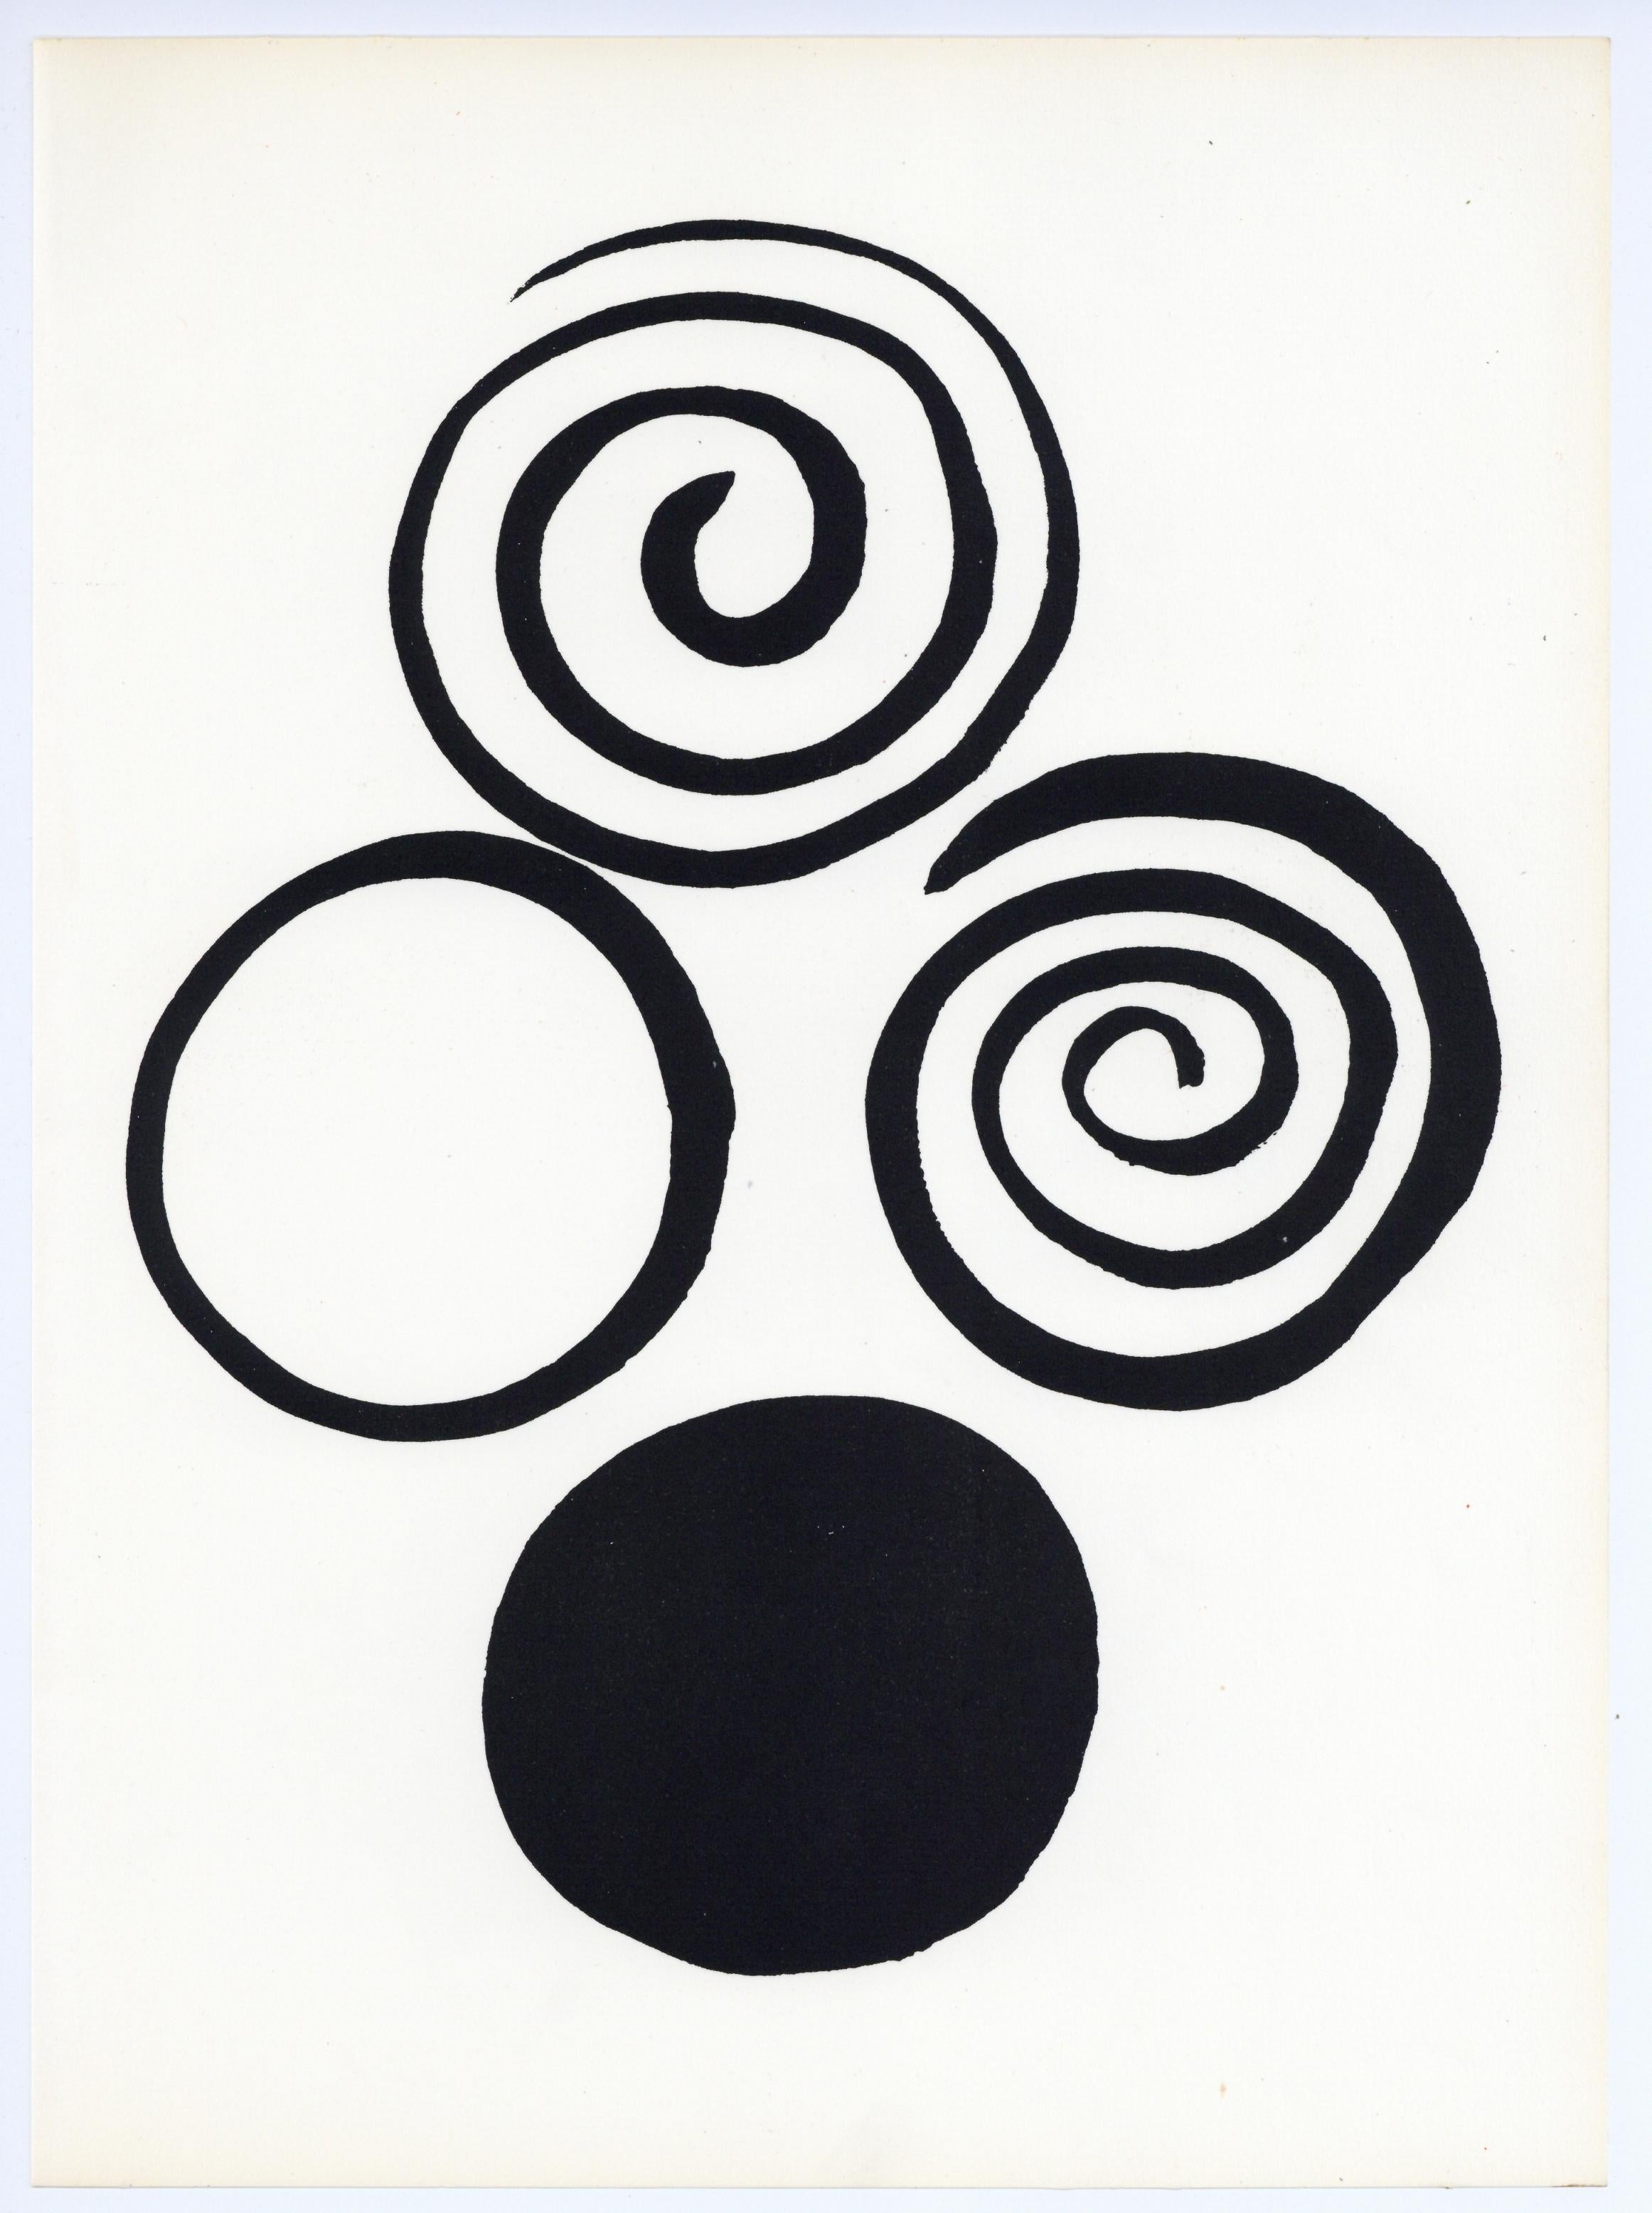 Calder, Composition, Musée national d'art moderne, Paris, 1965 (d'après)